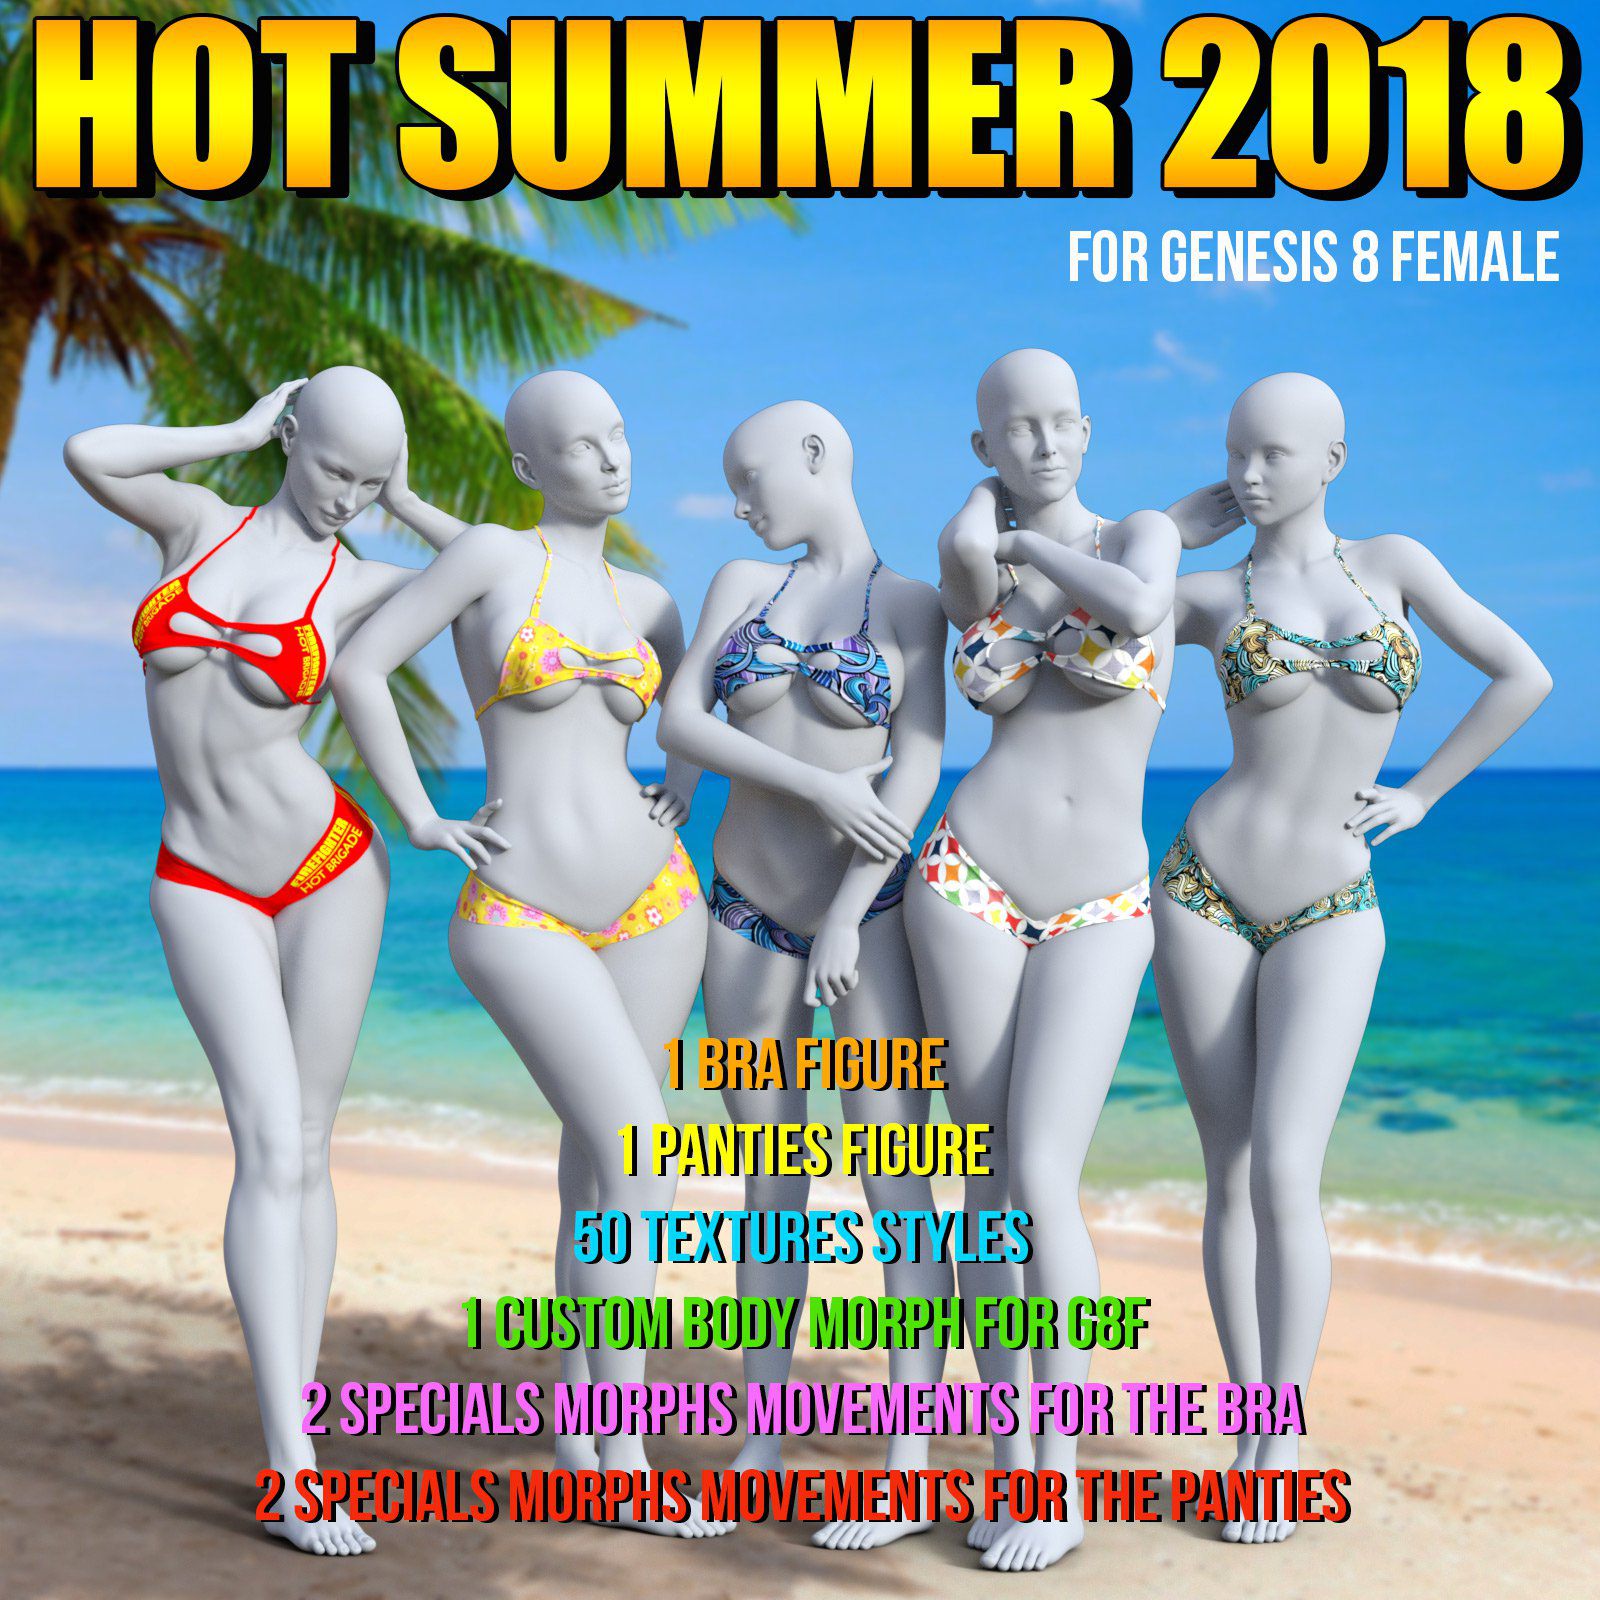 Hot Summer 2018 for G8 Females_DAZ3D下载站